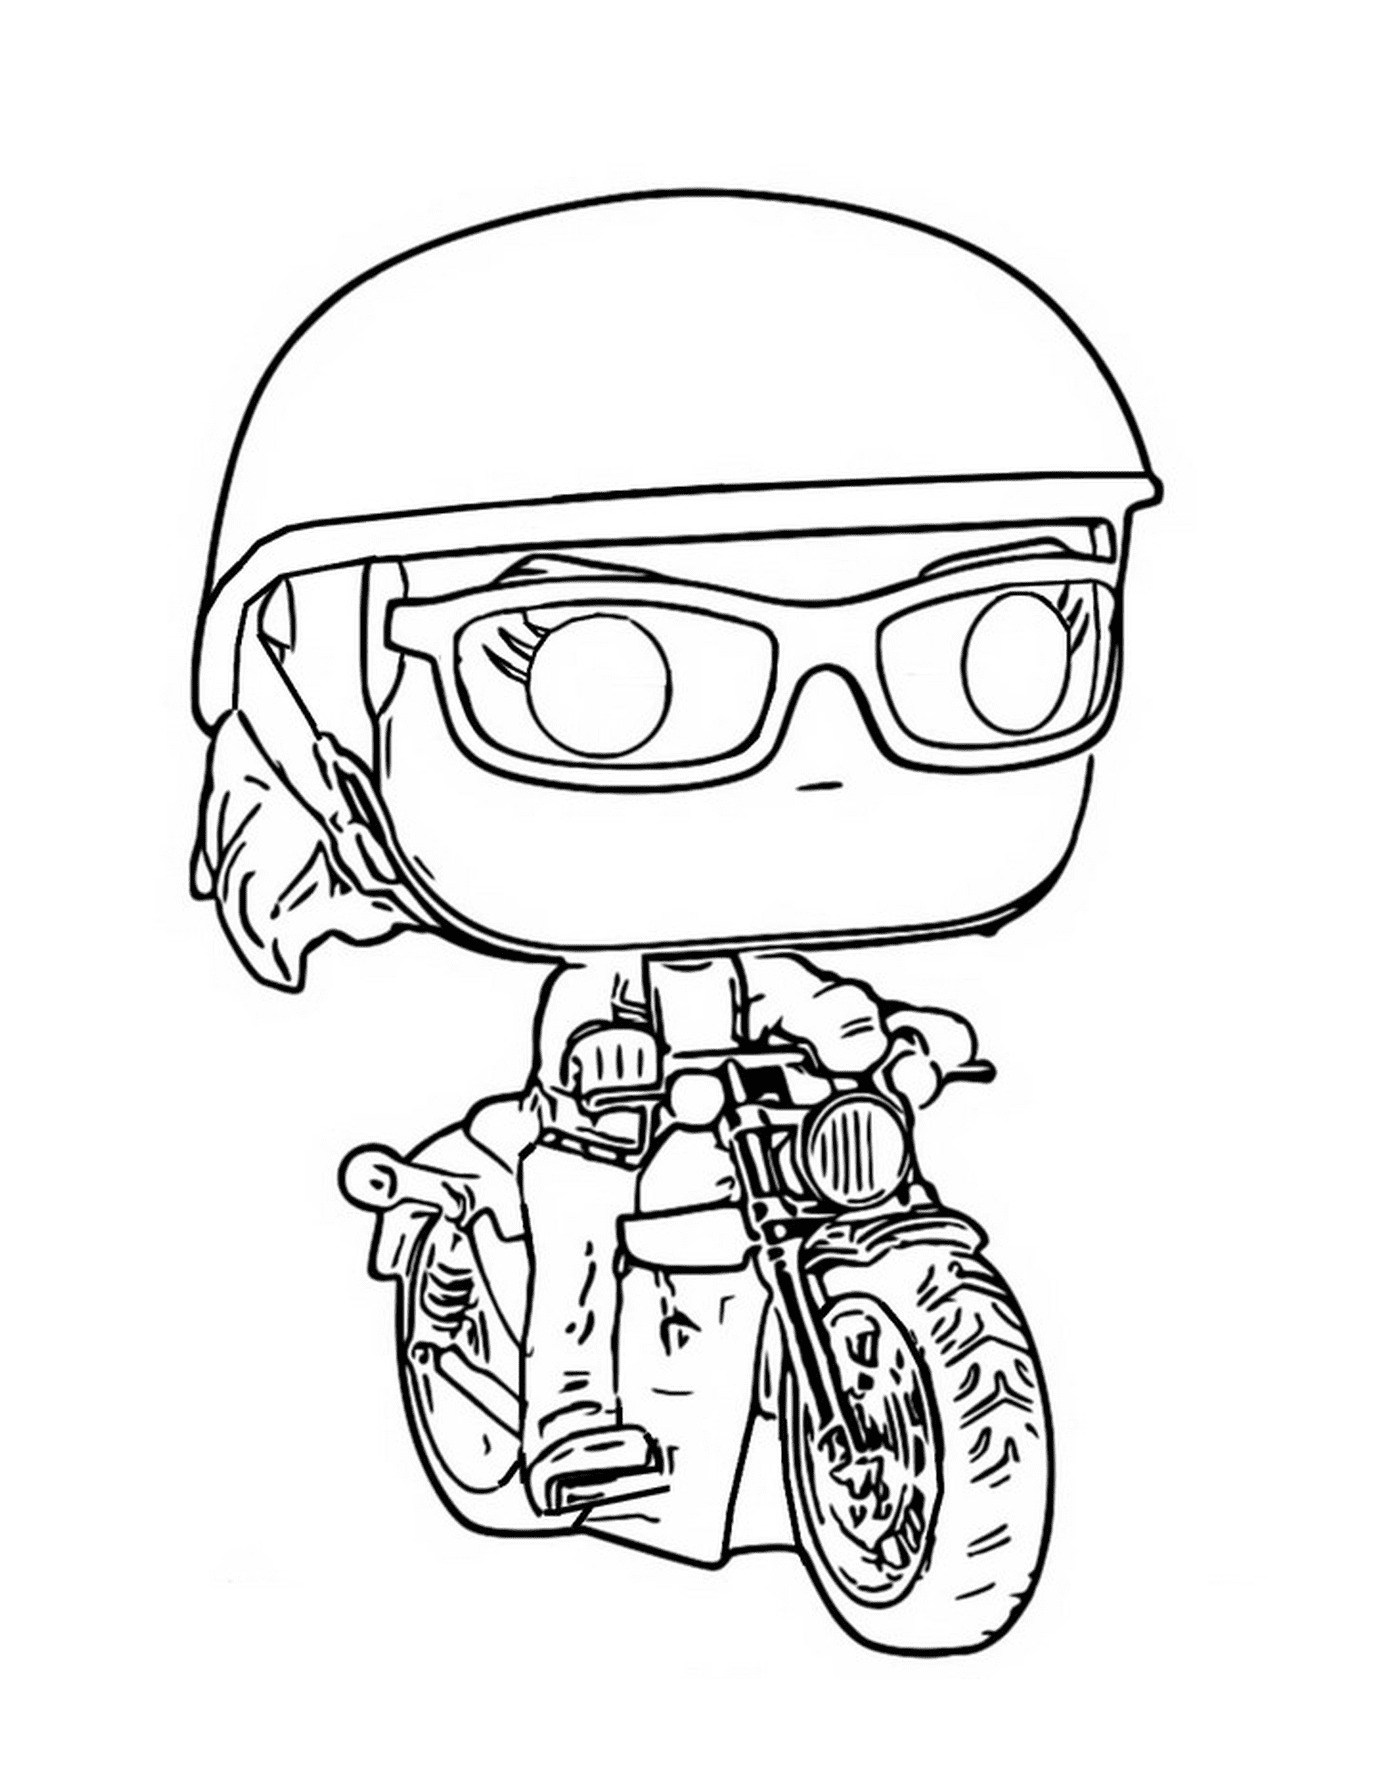  Carol Danvers on motorcycle 